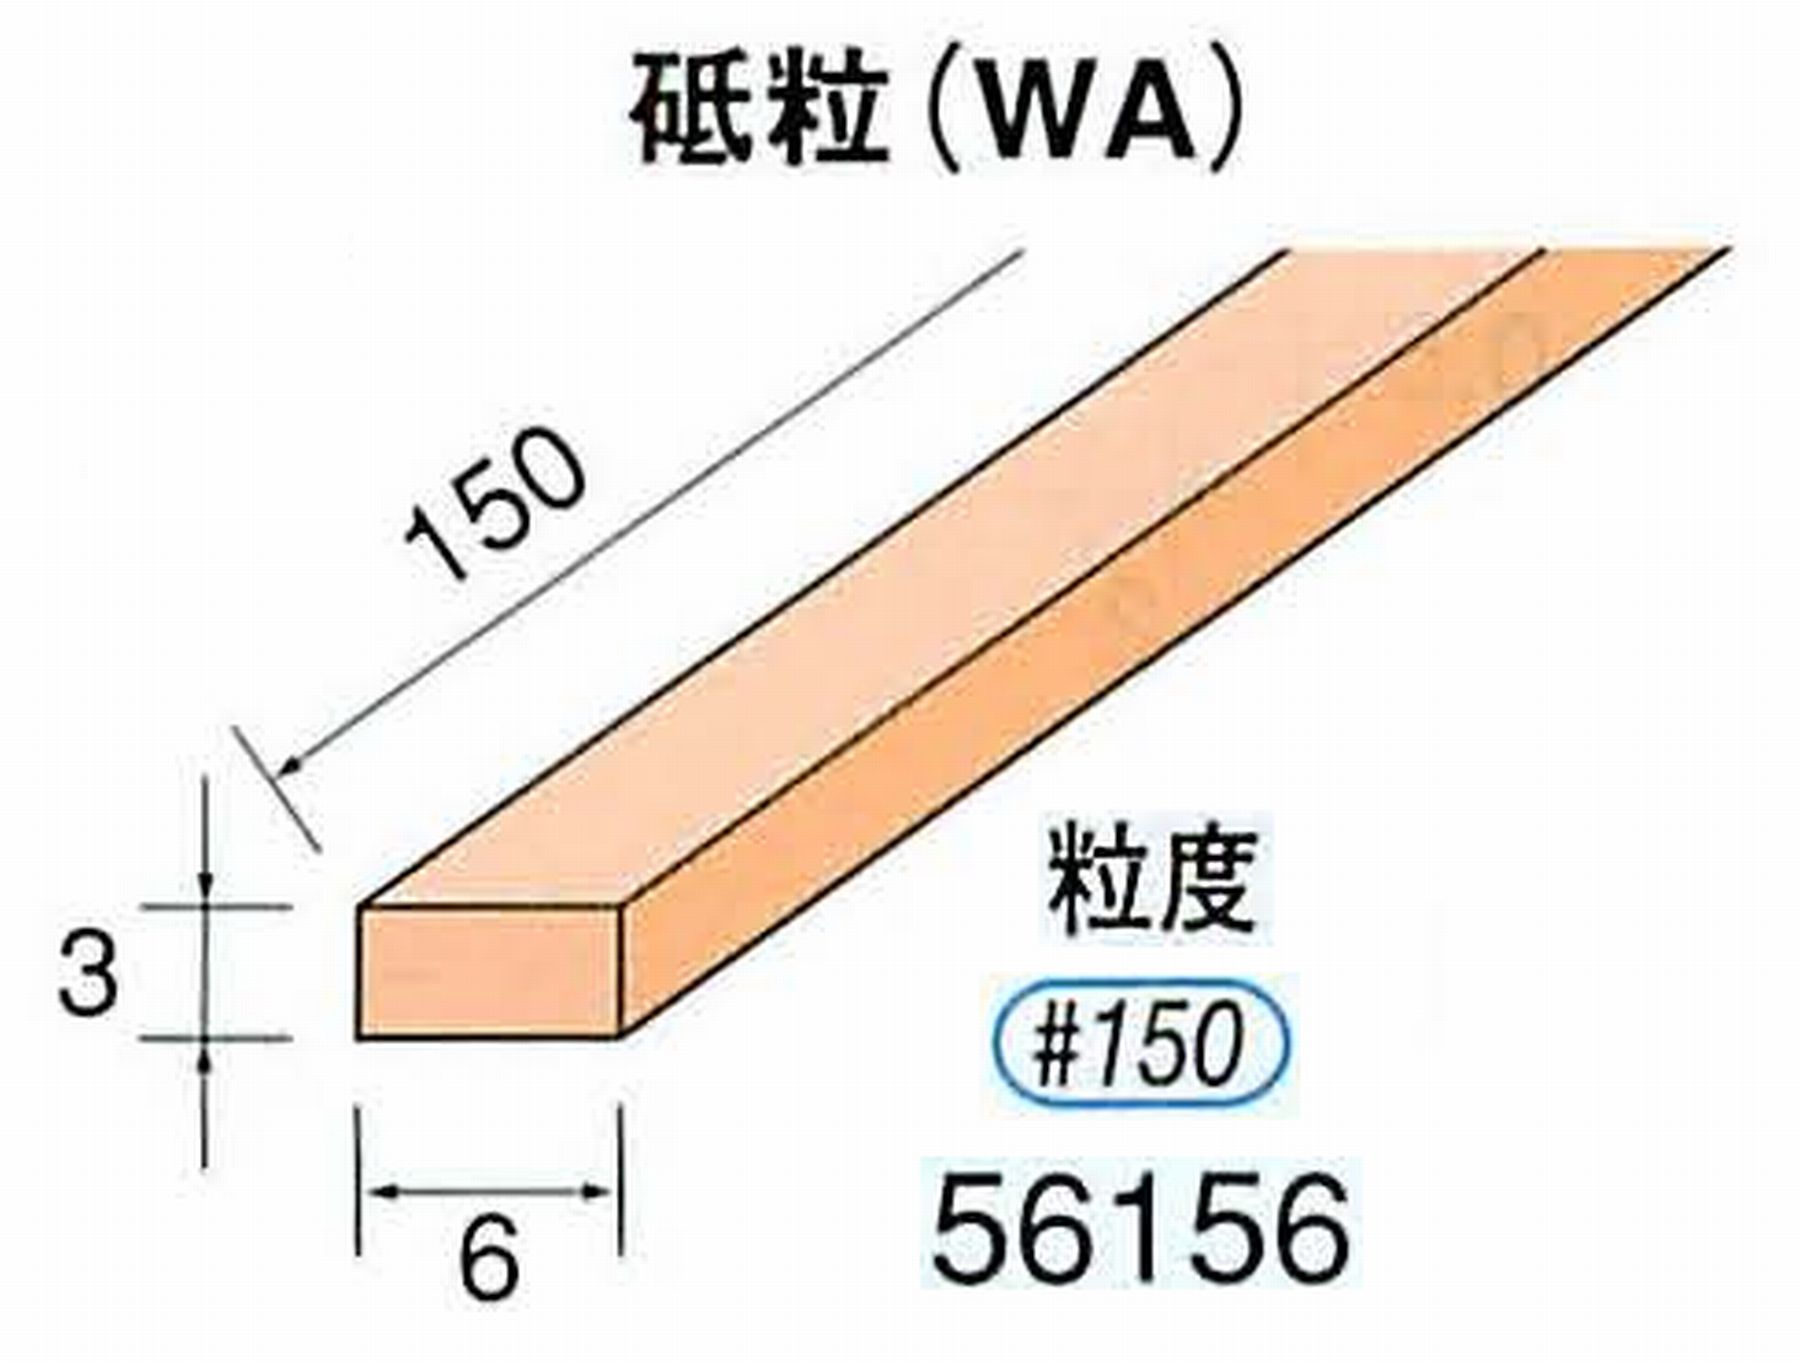 ナカニシ/NAKANISHI スティック砥石 スタンダードシリーズ 砥粒(WA) 56156